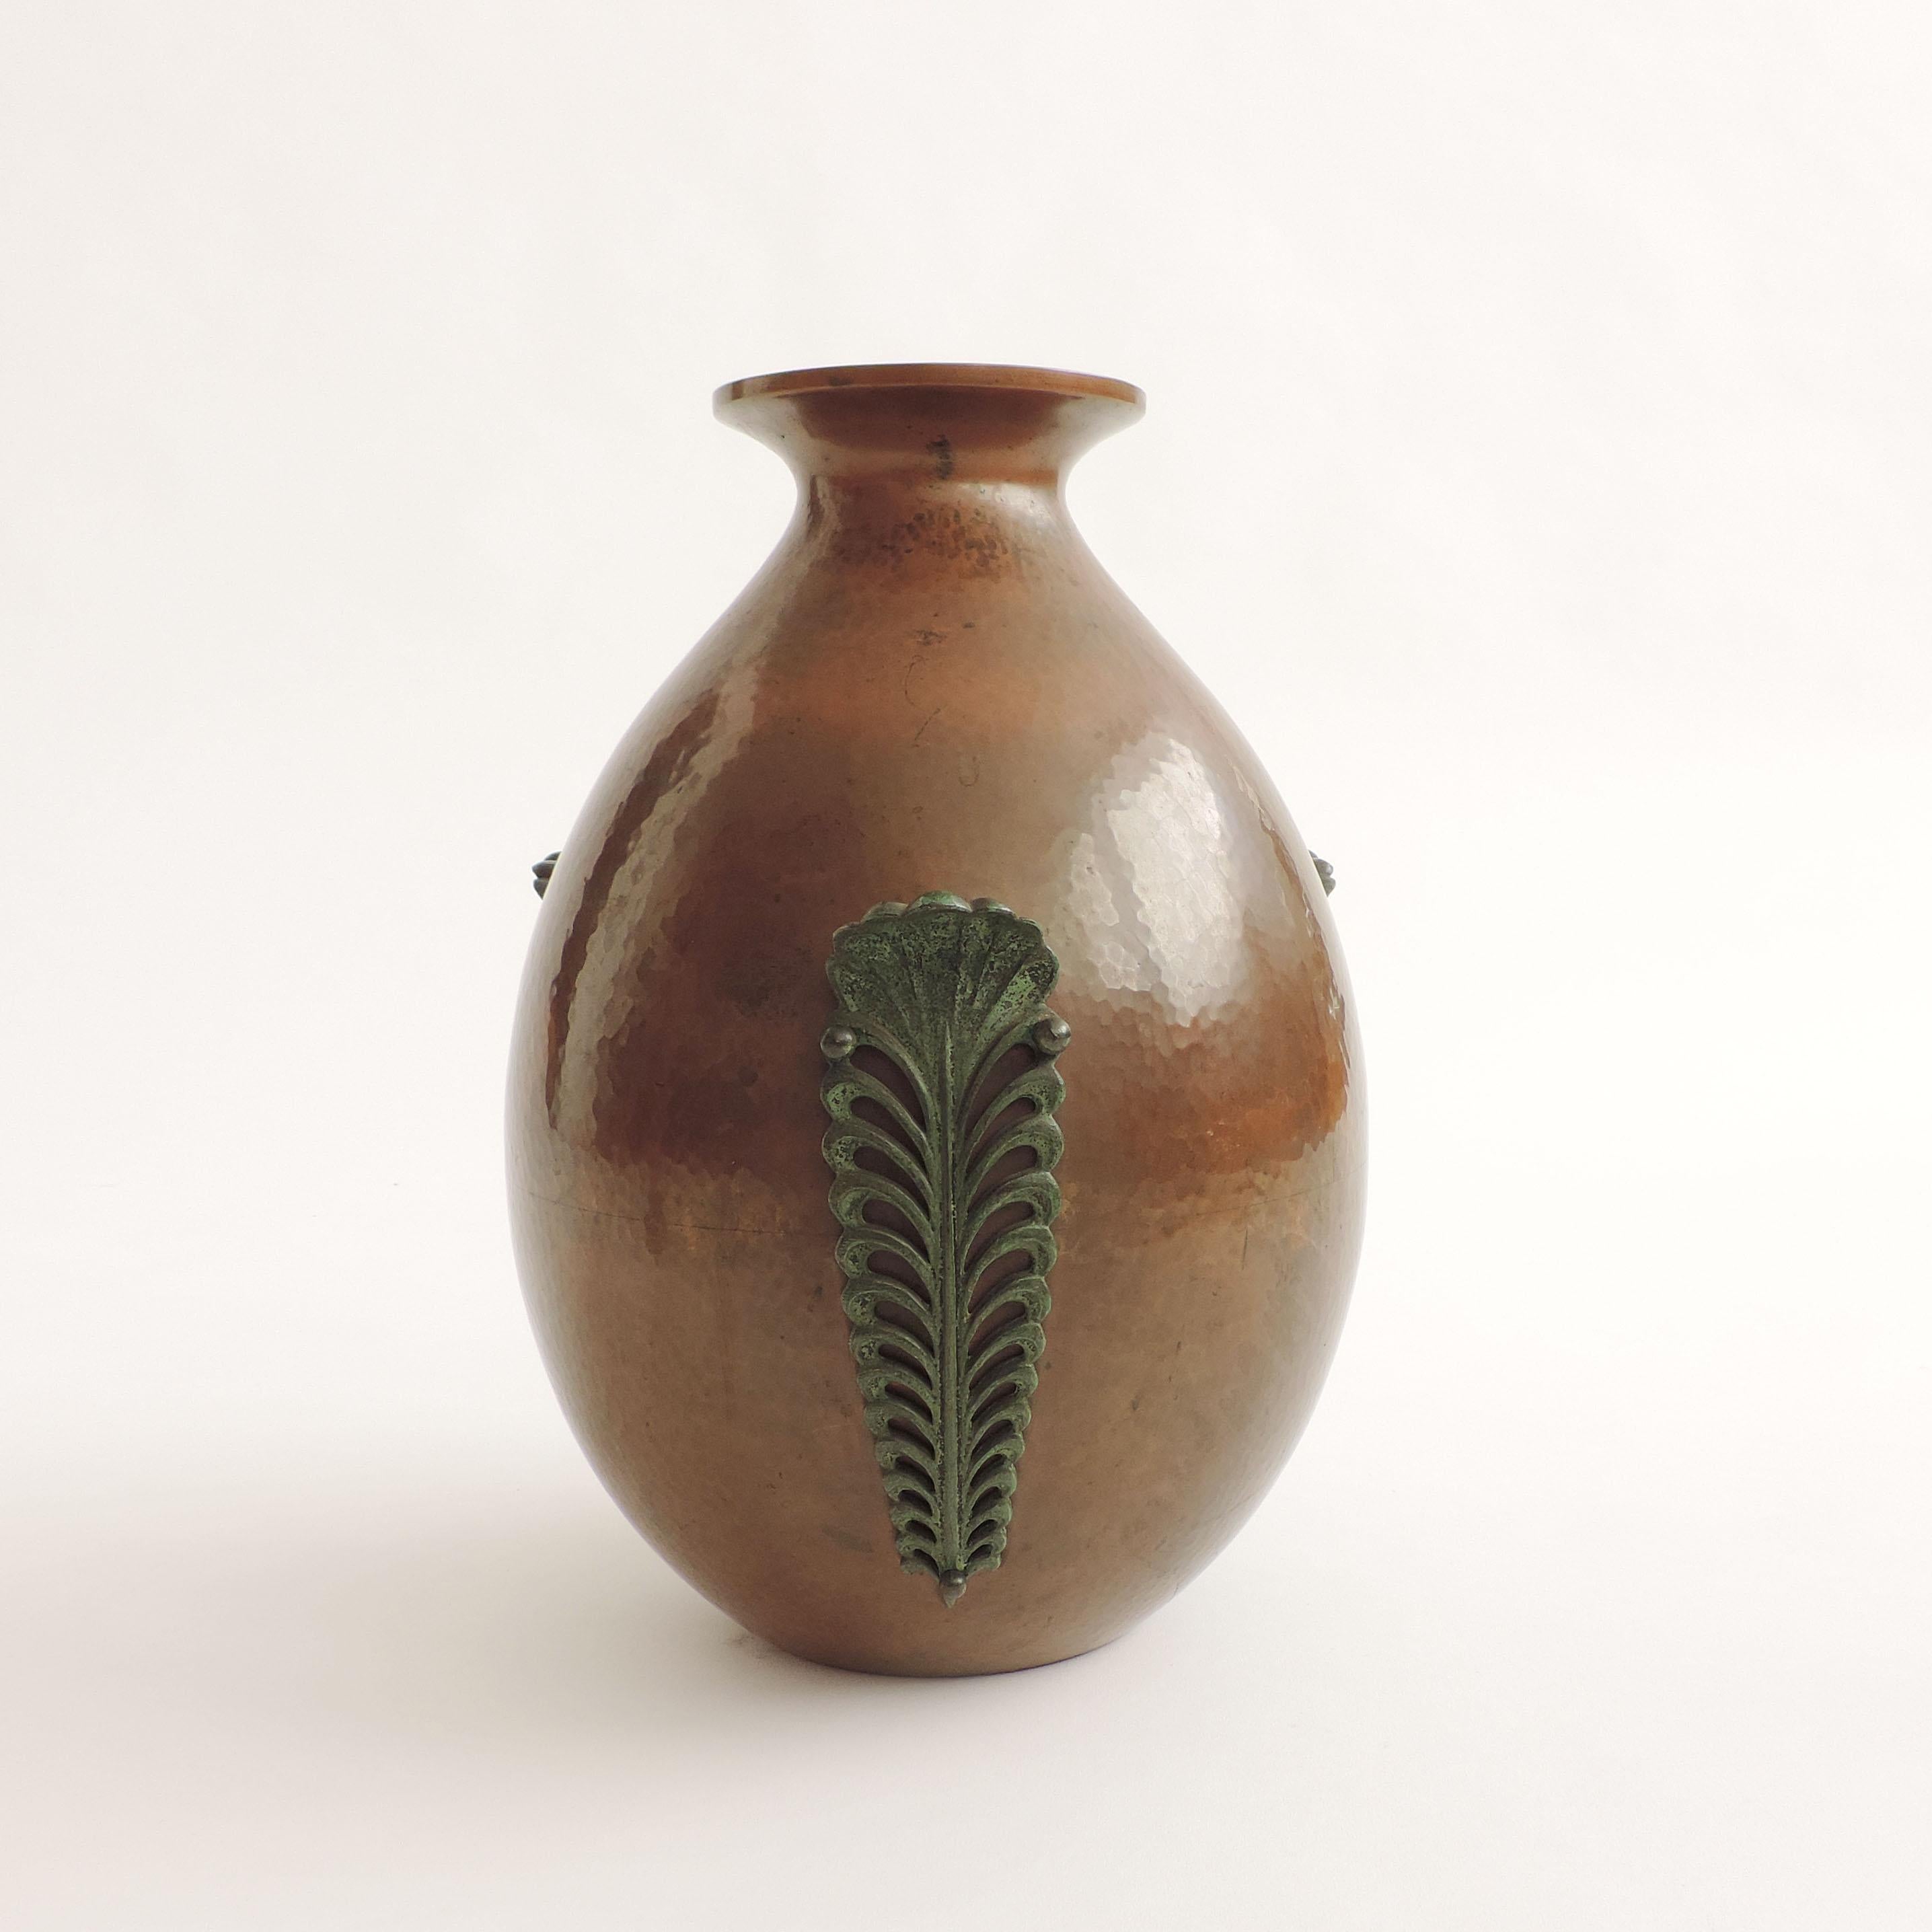 Vase en cuivre martelé italien des années 1930.
Trois feuilles décoratives en métal sont appliquées avec trois boutons ronds en métal.
Pièce non signée.
 